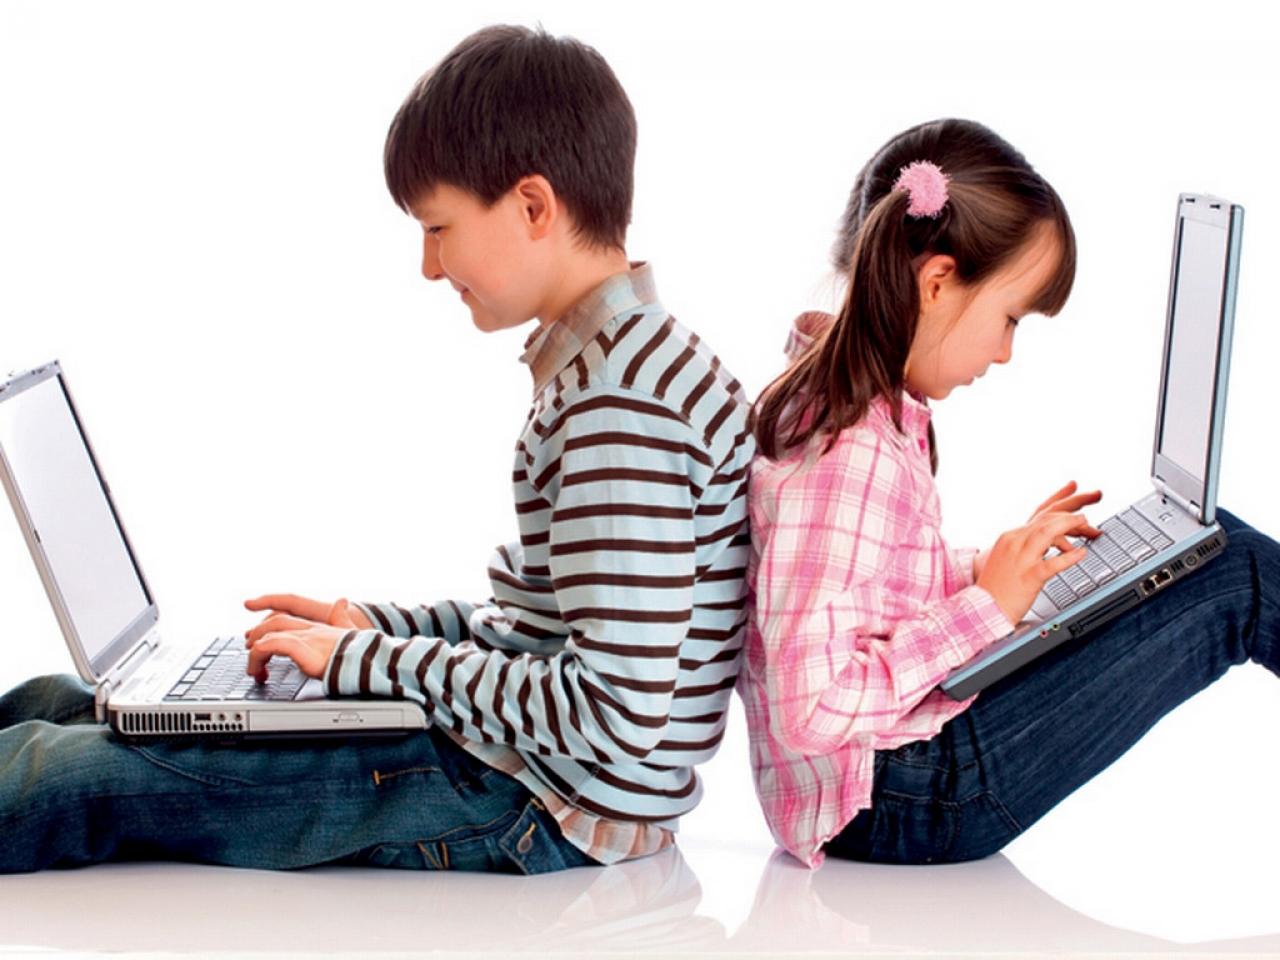 Интернет в жизни детей. Компьютерная зависимость. Подросток и компьютер. Компьютер для детей. Зависимость подростков от компьютера.